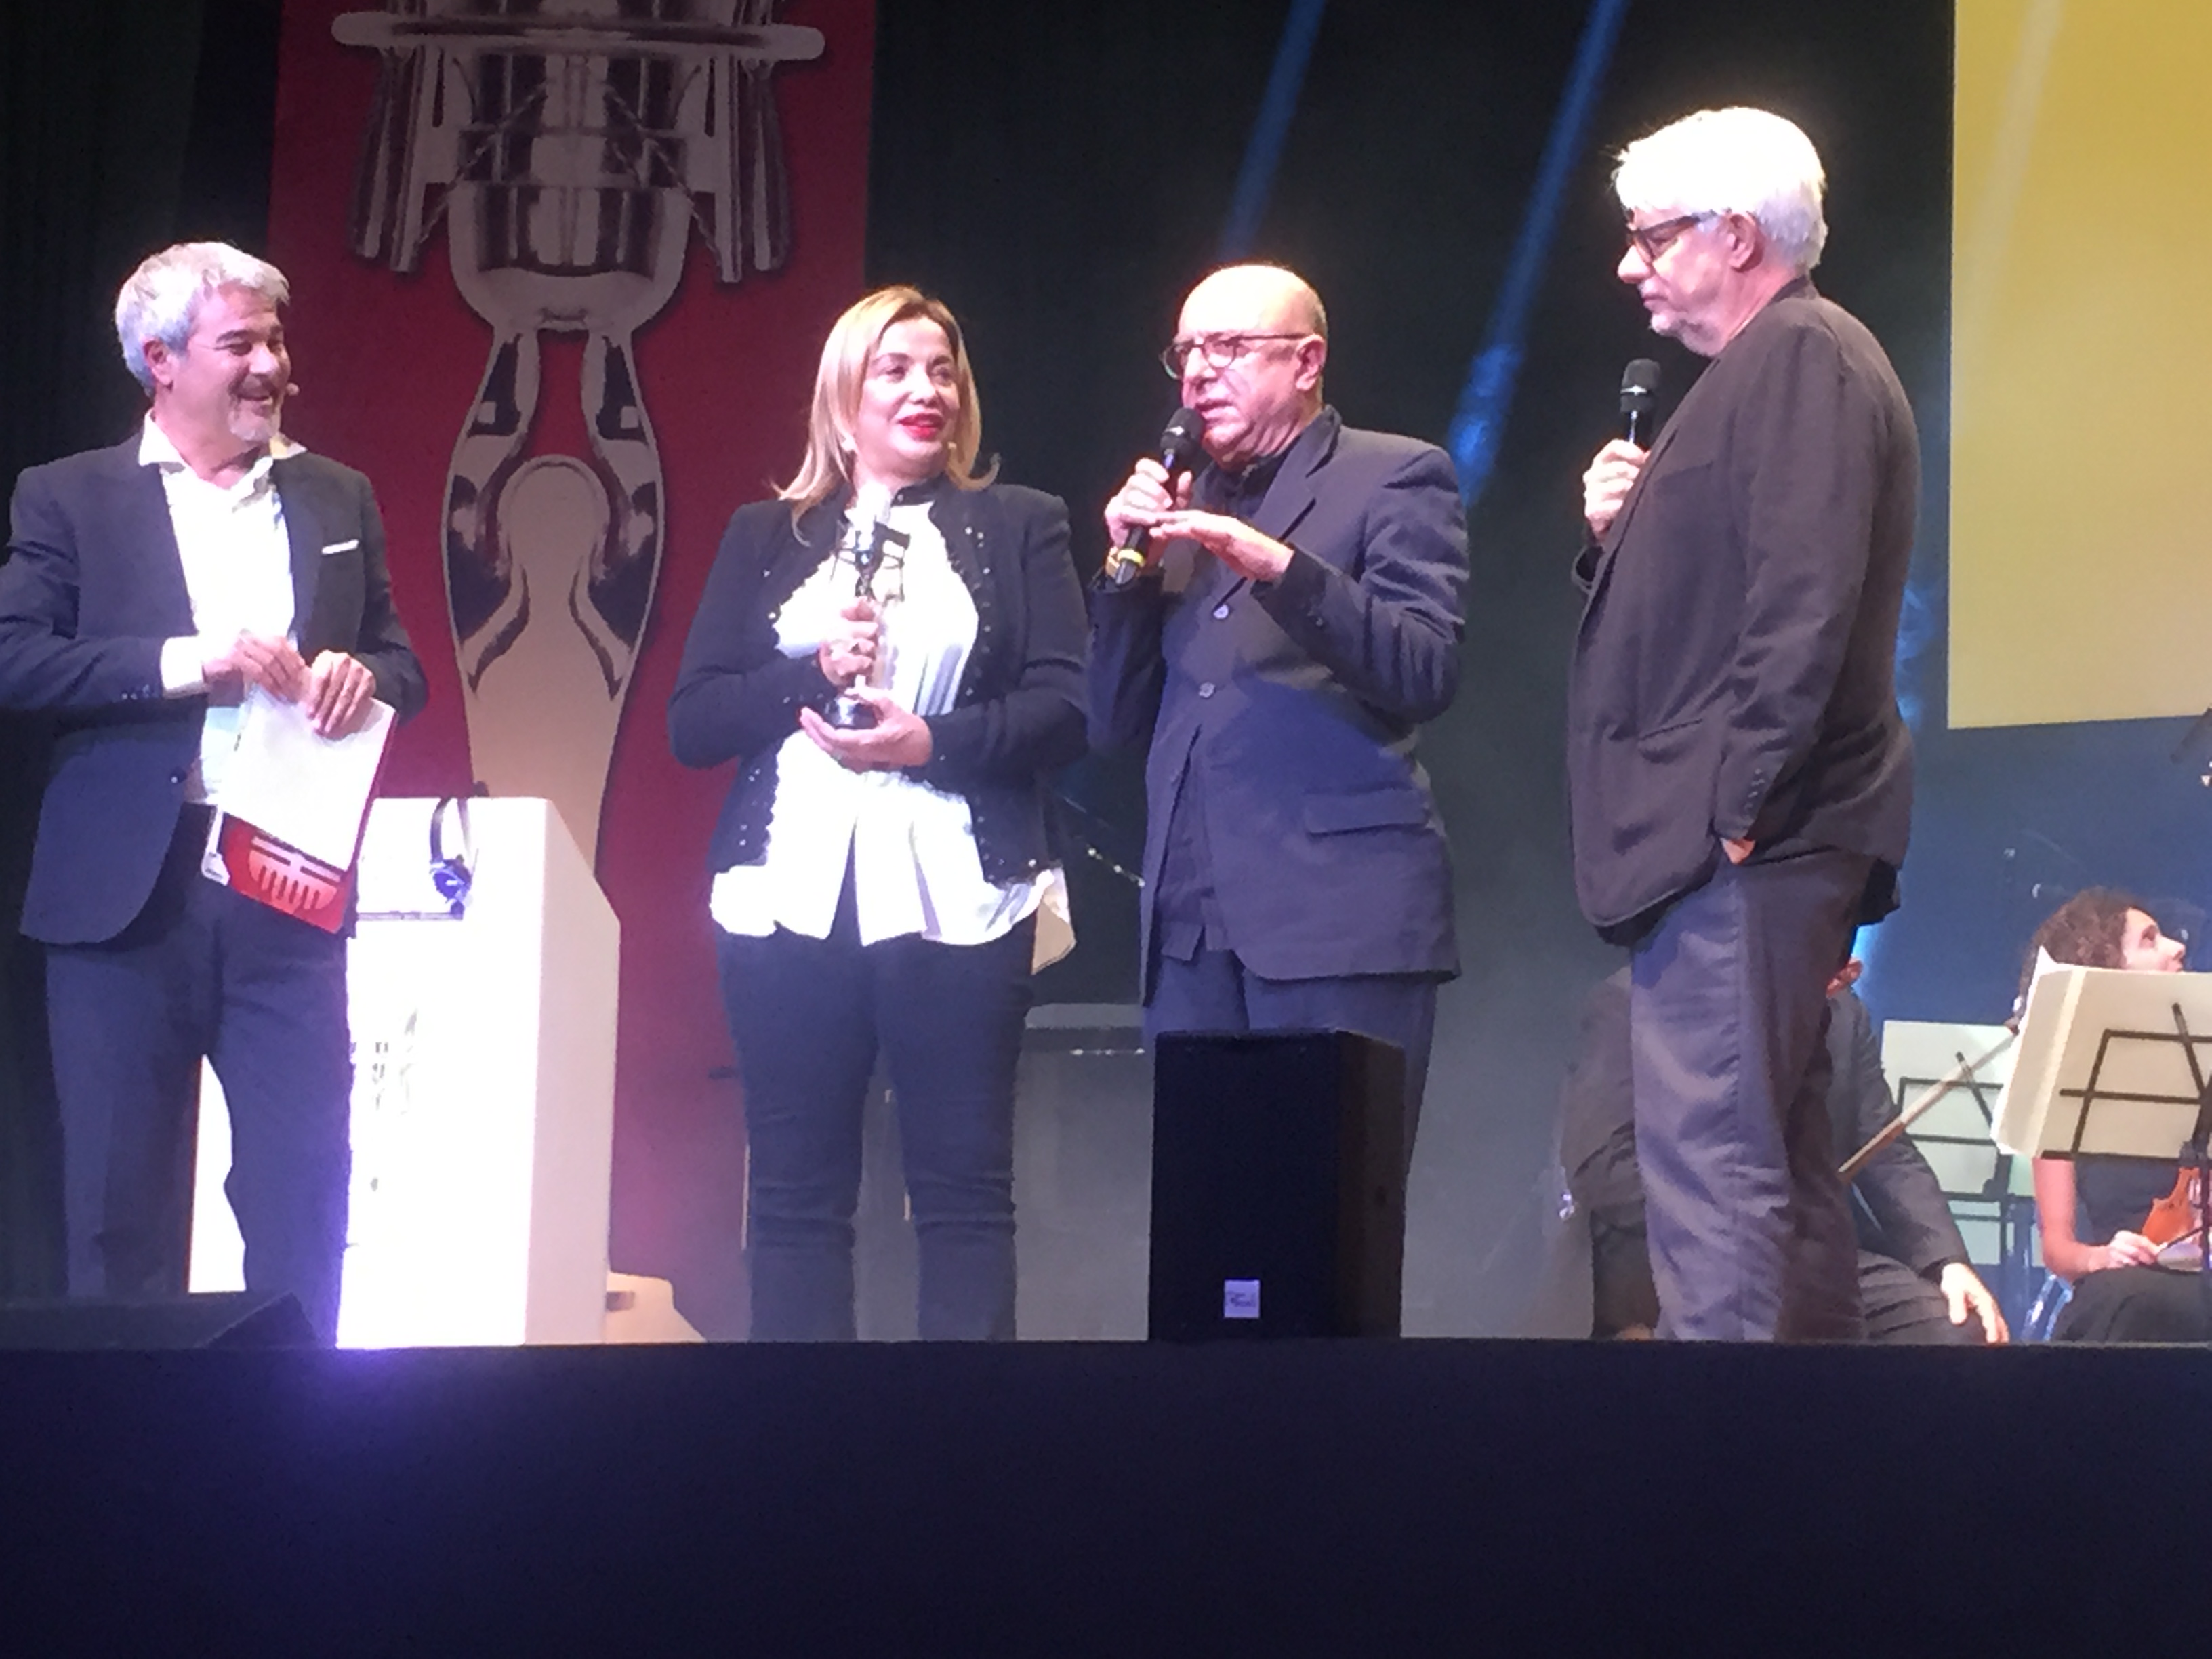 Francesco Vairano, Premio alla carriera, con Pino Insegno, Simona Izzo e Ricky Tognazzi